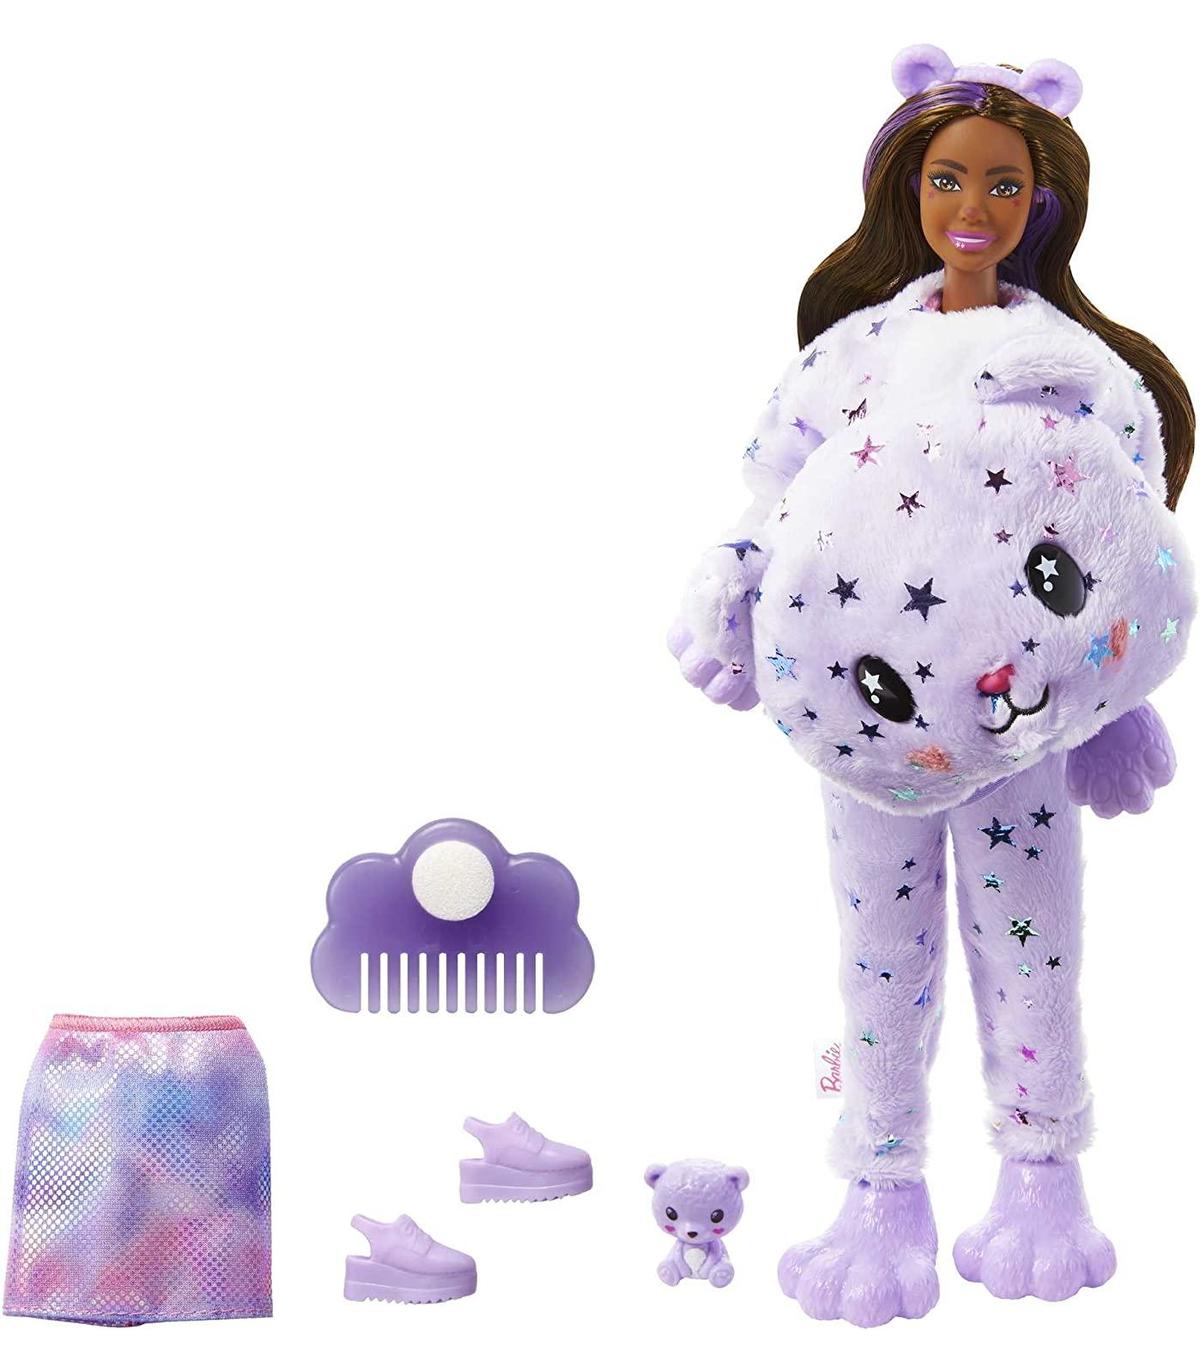 BARBIE Cutie Reveal Serie Fantasía Disfraz revela una muñeca